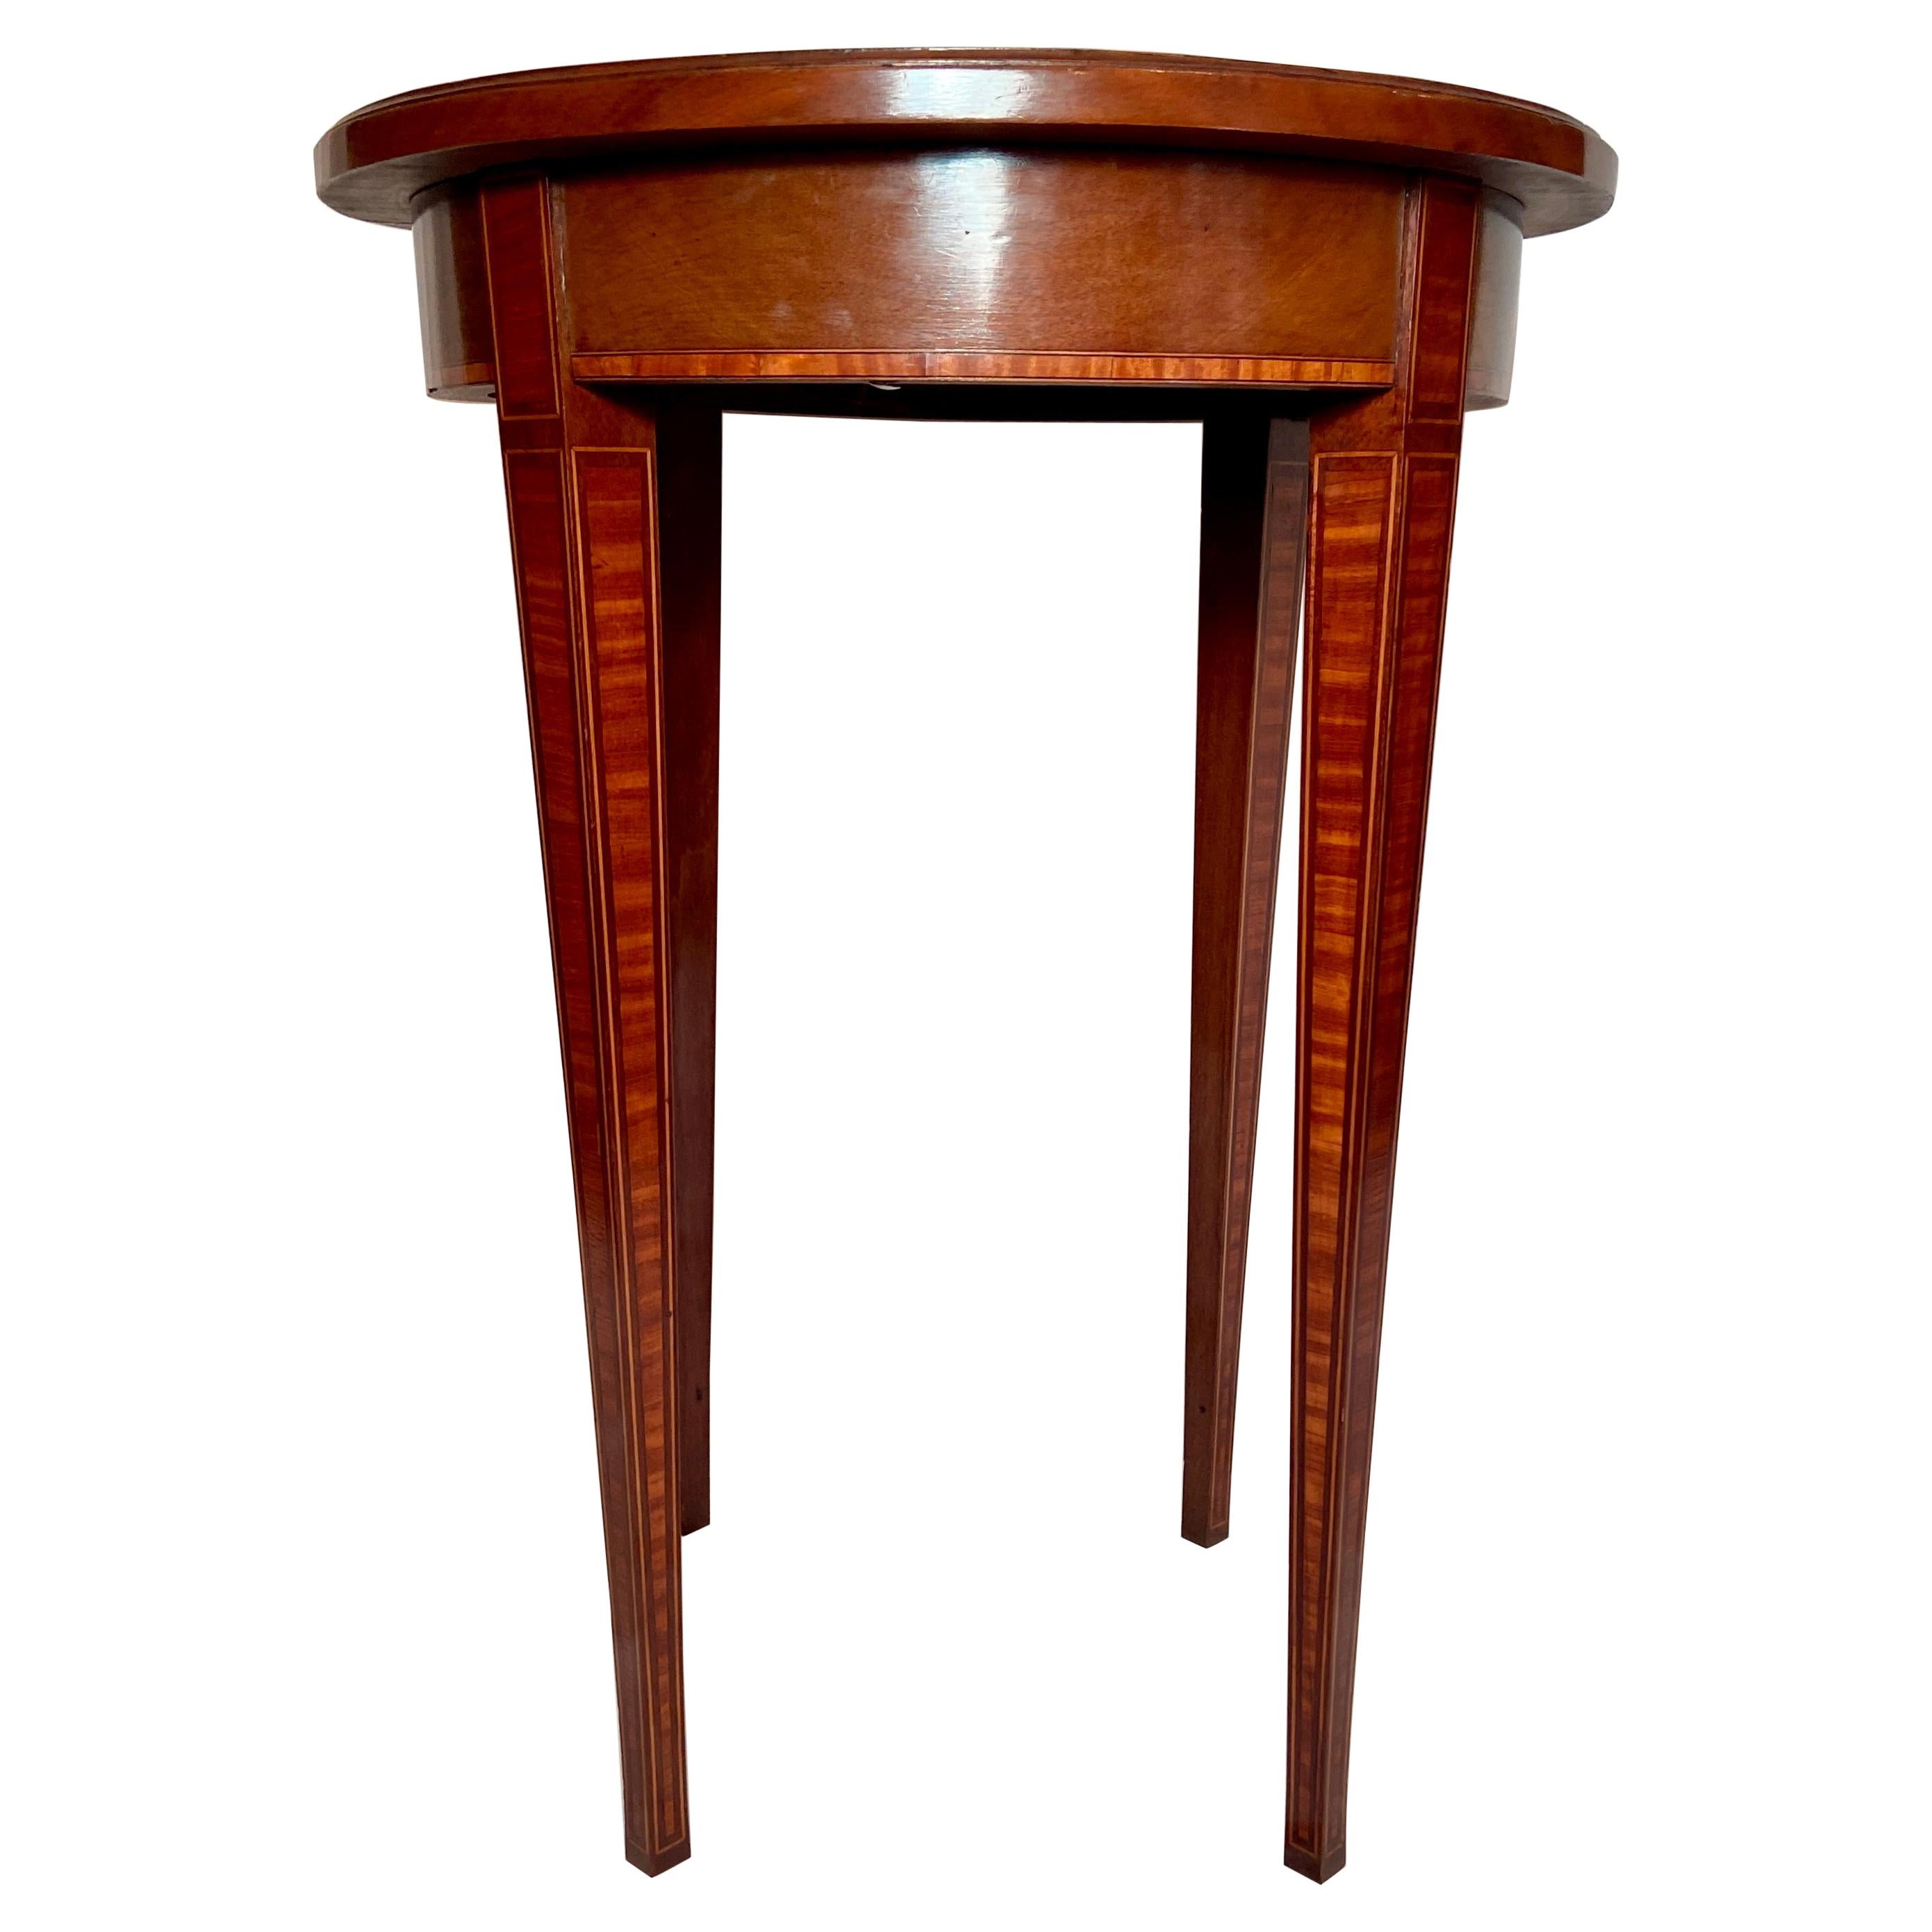 Antiker englischer Mahagoni-Tisch mit Seidenholz-Intarsien, um 1880-1890